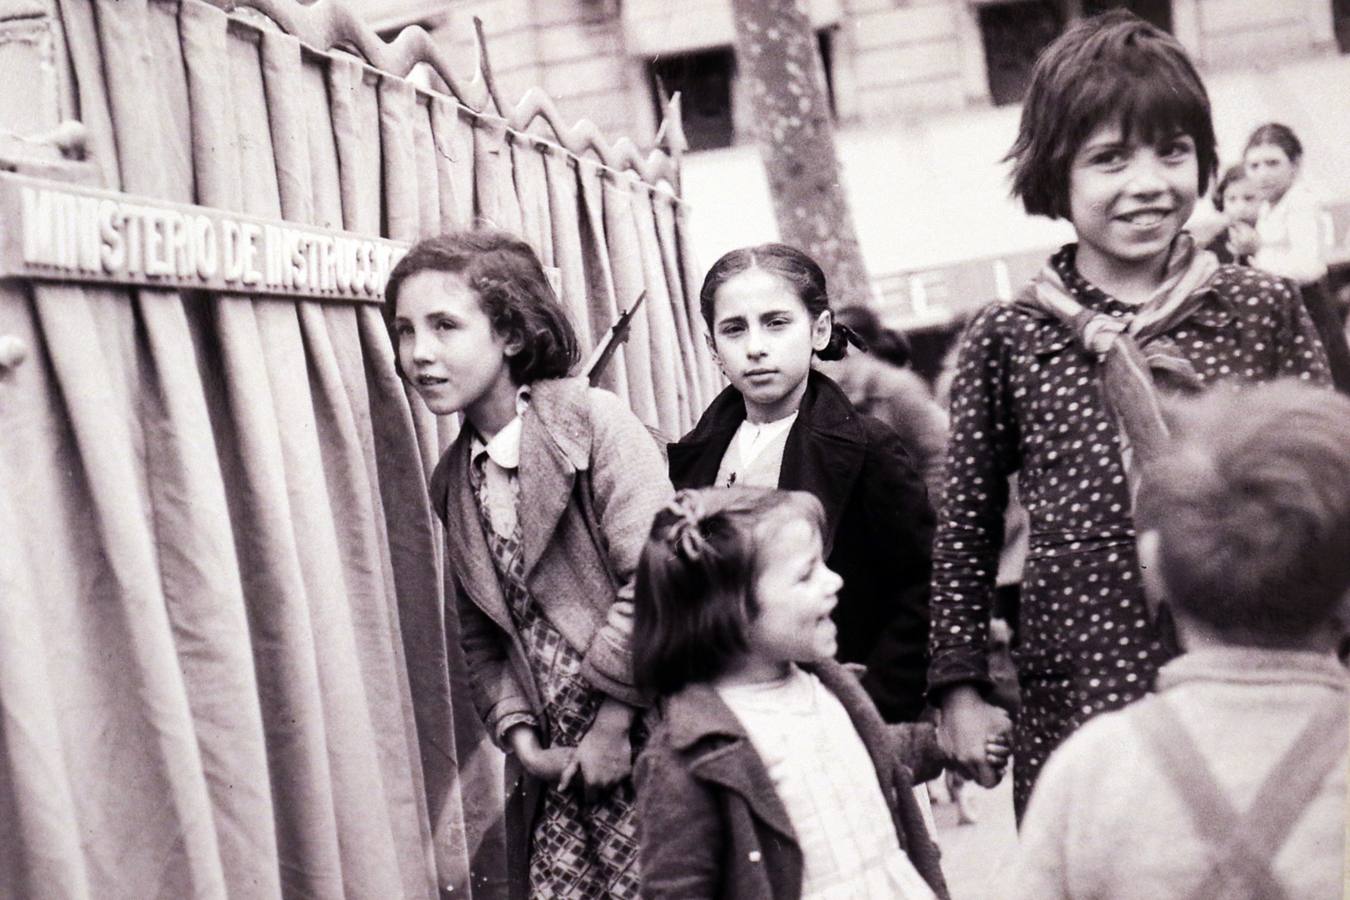 La muestra reúne 98 imágenes que la fotógrafa húngara tomó durante su estancia en España entre 1937 y 1939